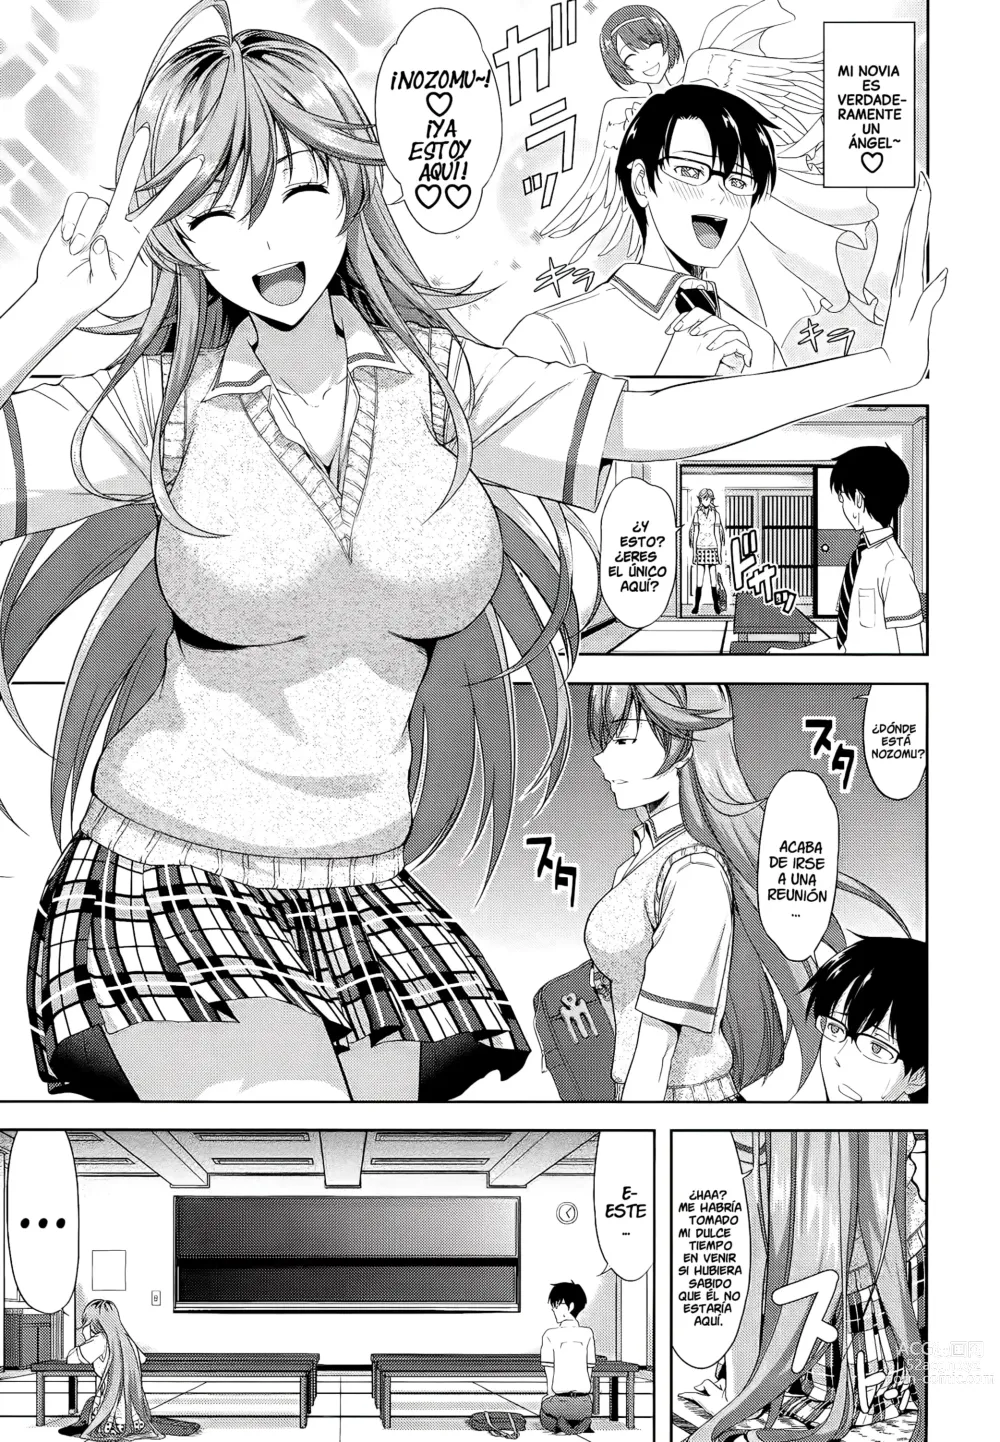 Page 3 of manga ¡Una Novia debe ser Absolutamente Virgen!